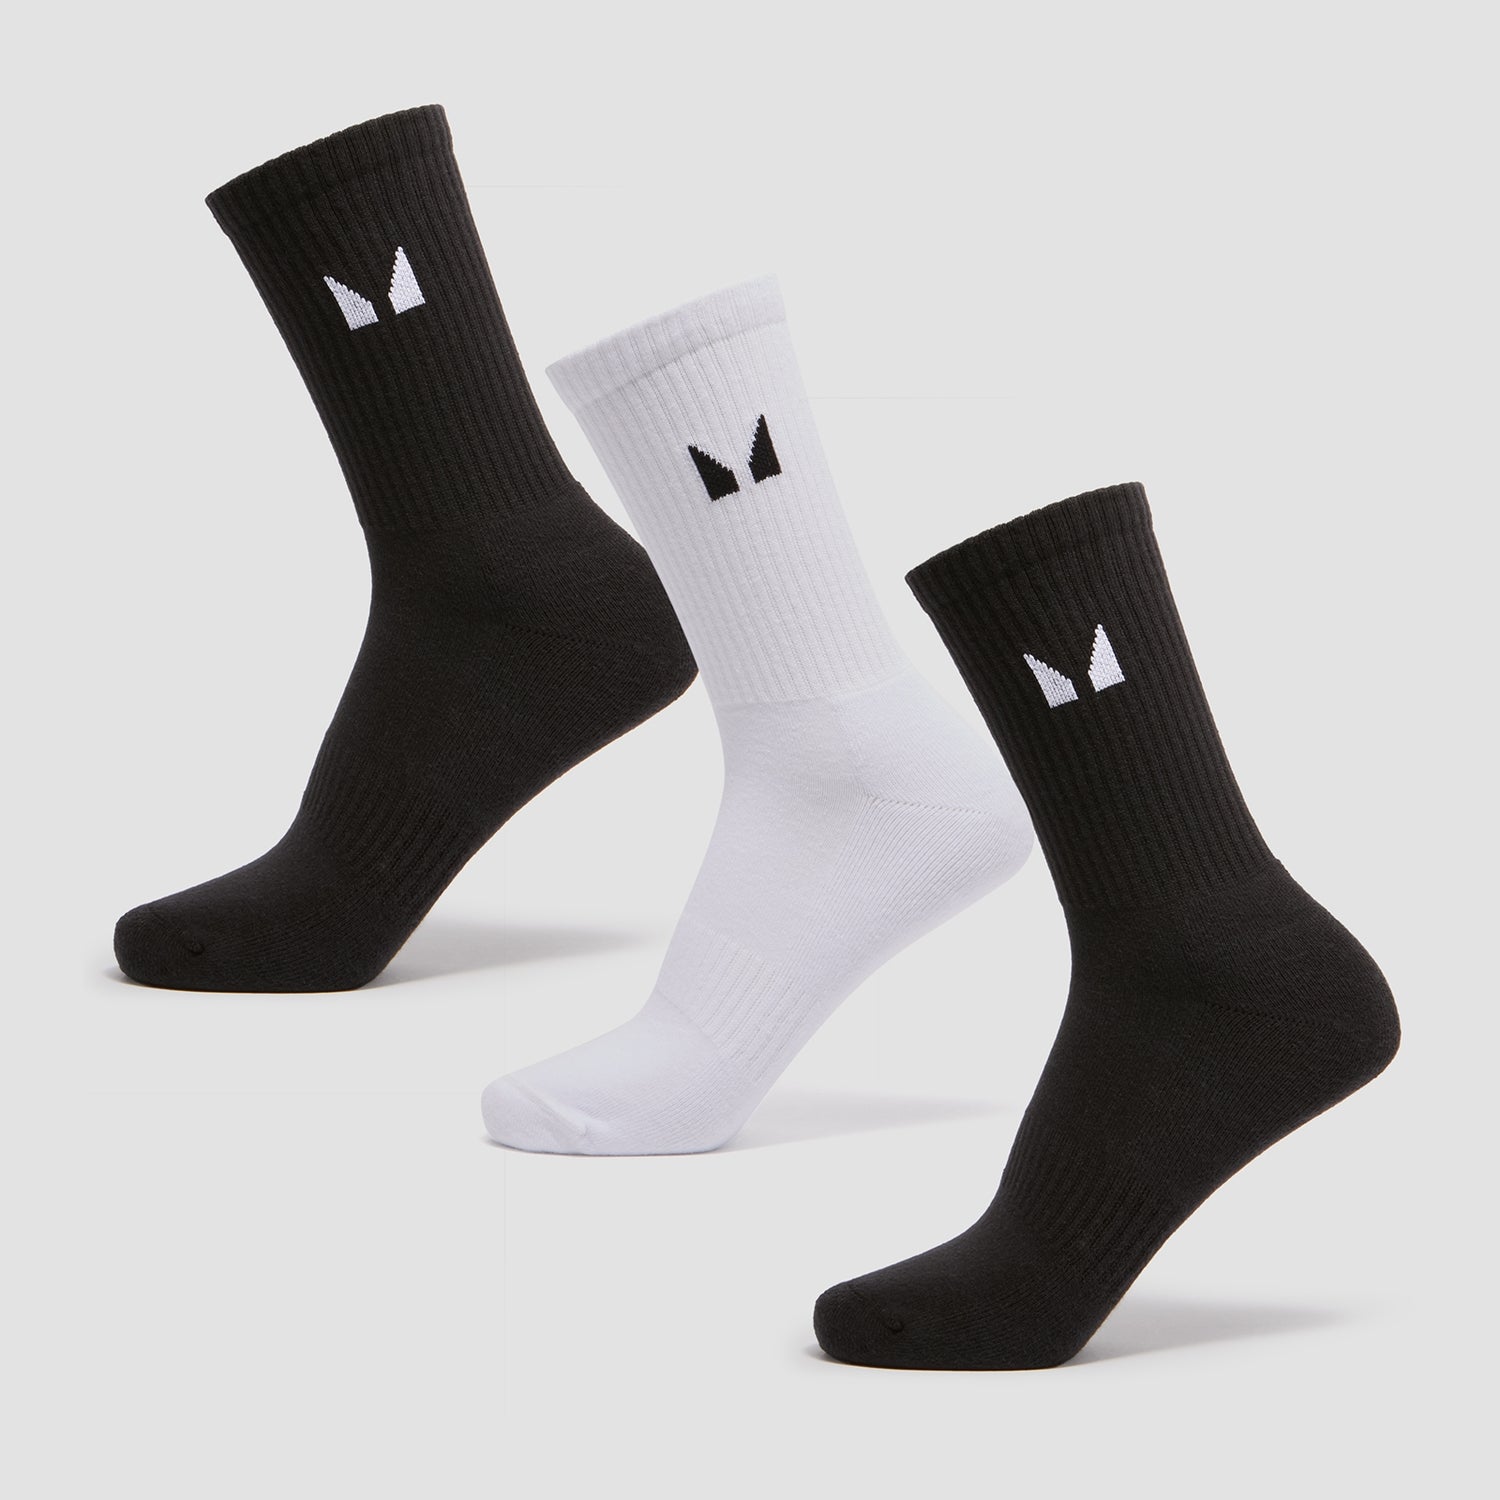 Γυναικείες Κάλτσες MP Essentials Crew (συσκευασία με 3 ζεύγος) - Μαύρο/Άσπρο - UK 2-5